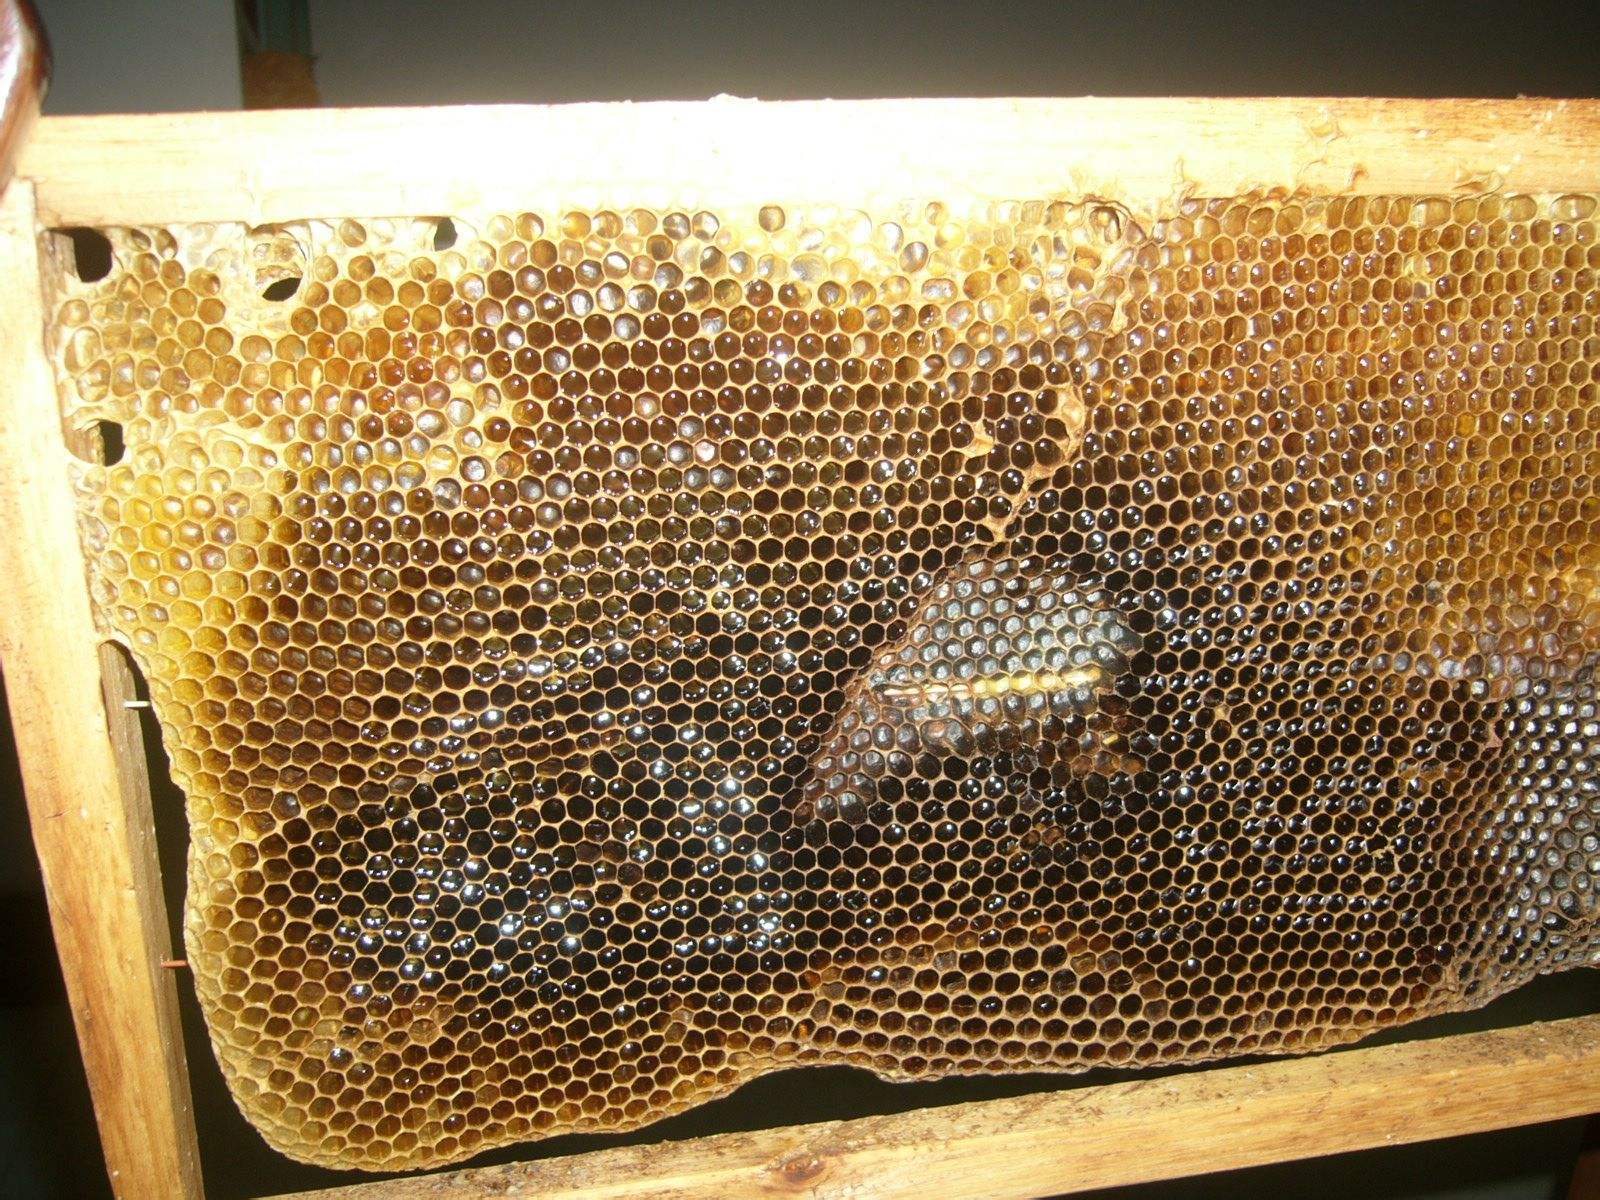 如何准确找到附近的野生蜜蜂窝?吸引蜜蜂养殖的方法是什么